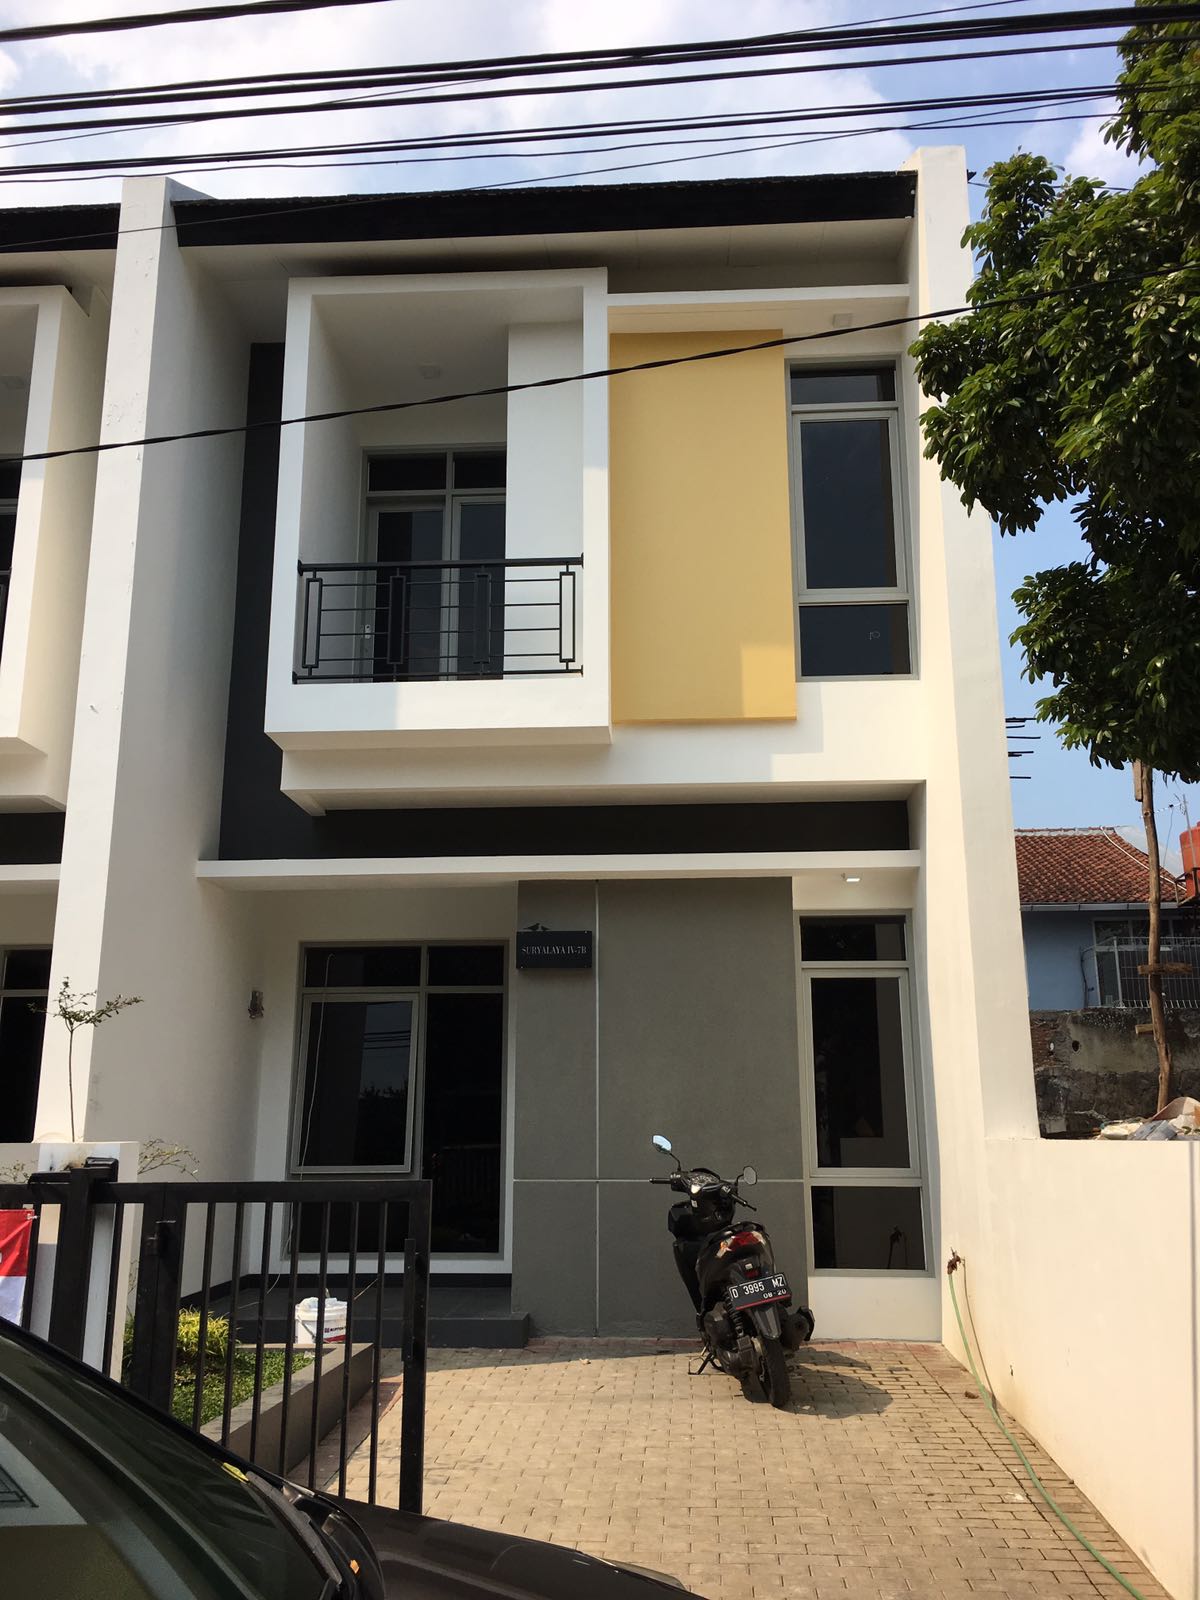 Dijual Rumah Baru di Suryalaya Sayap Buah Batu 5 menit dari Transtudio Bandung